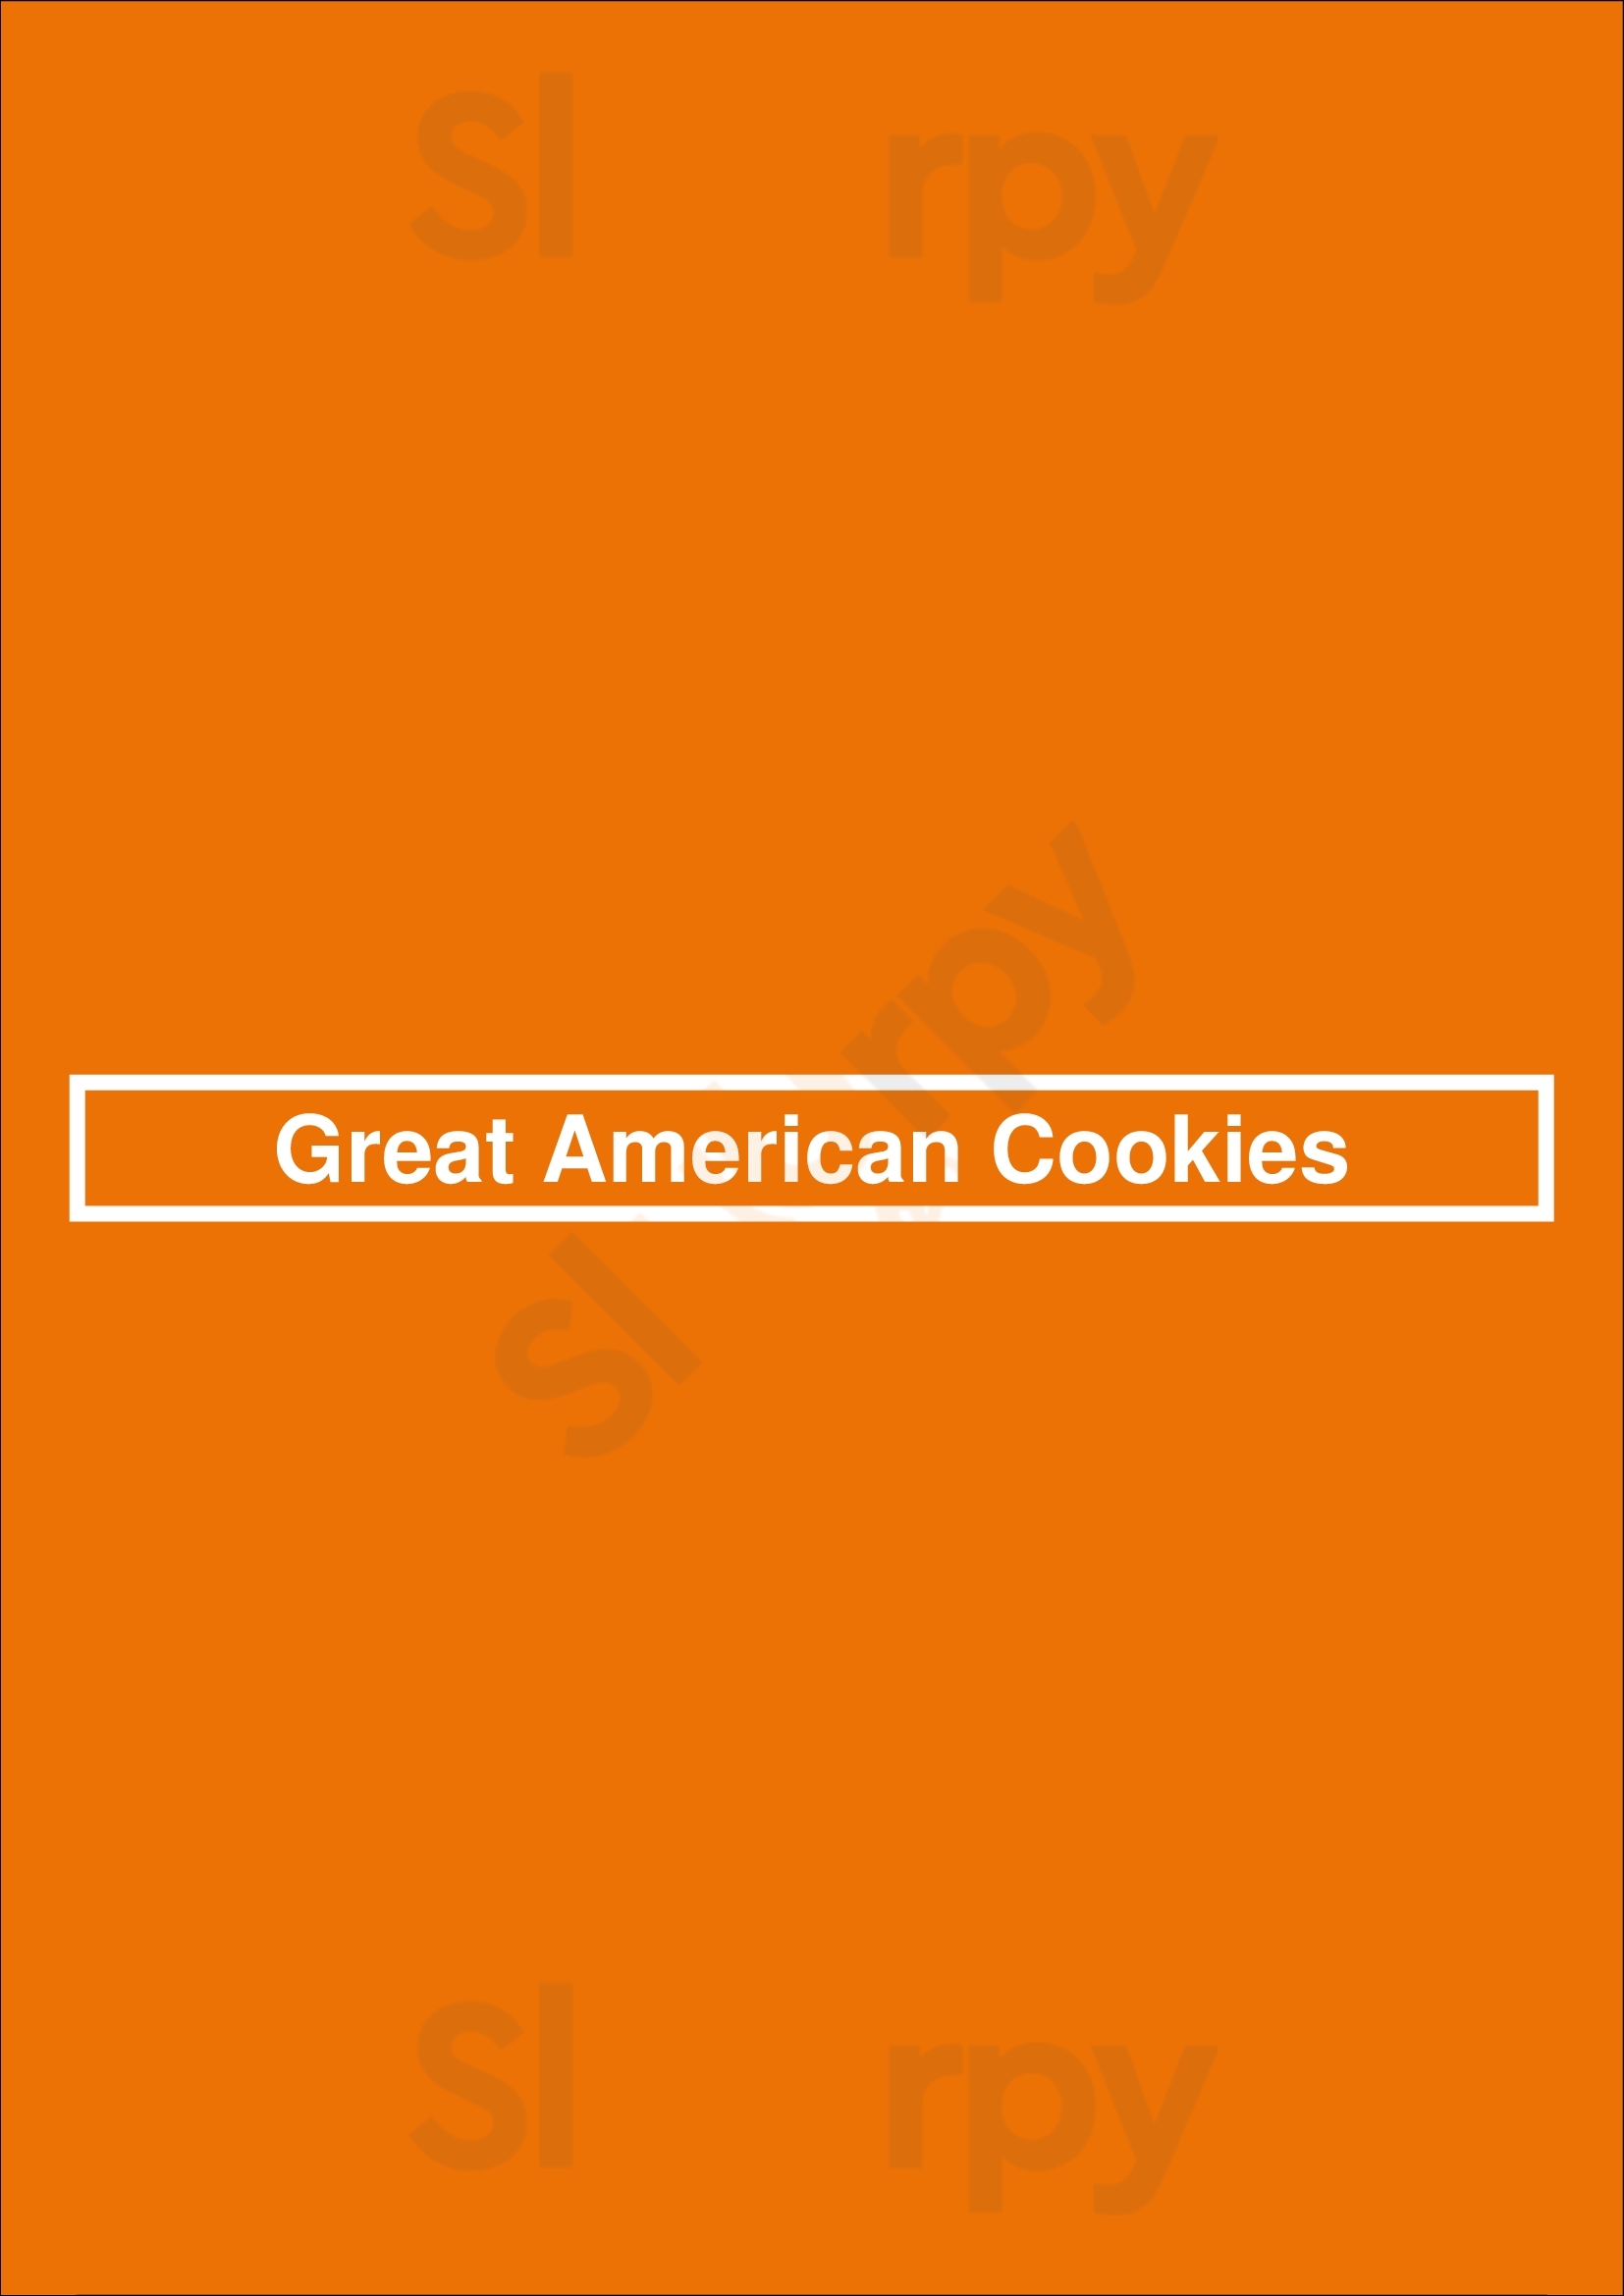 Great American Cookies Memphis Menu - 1